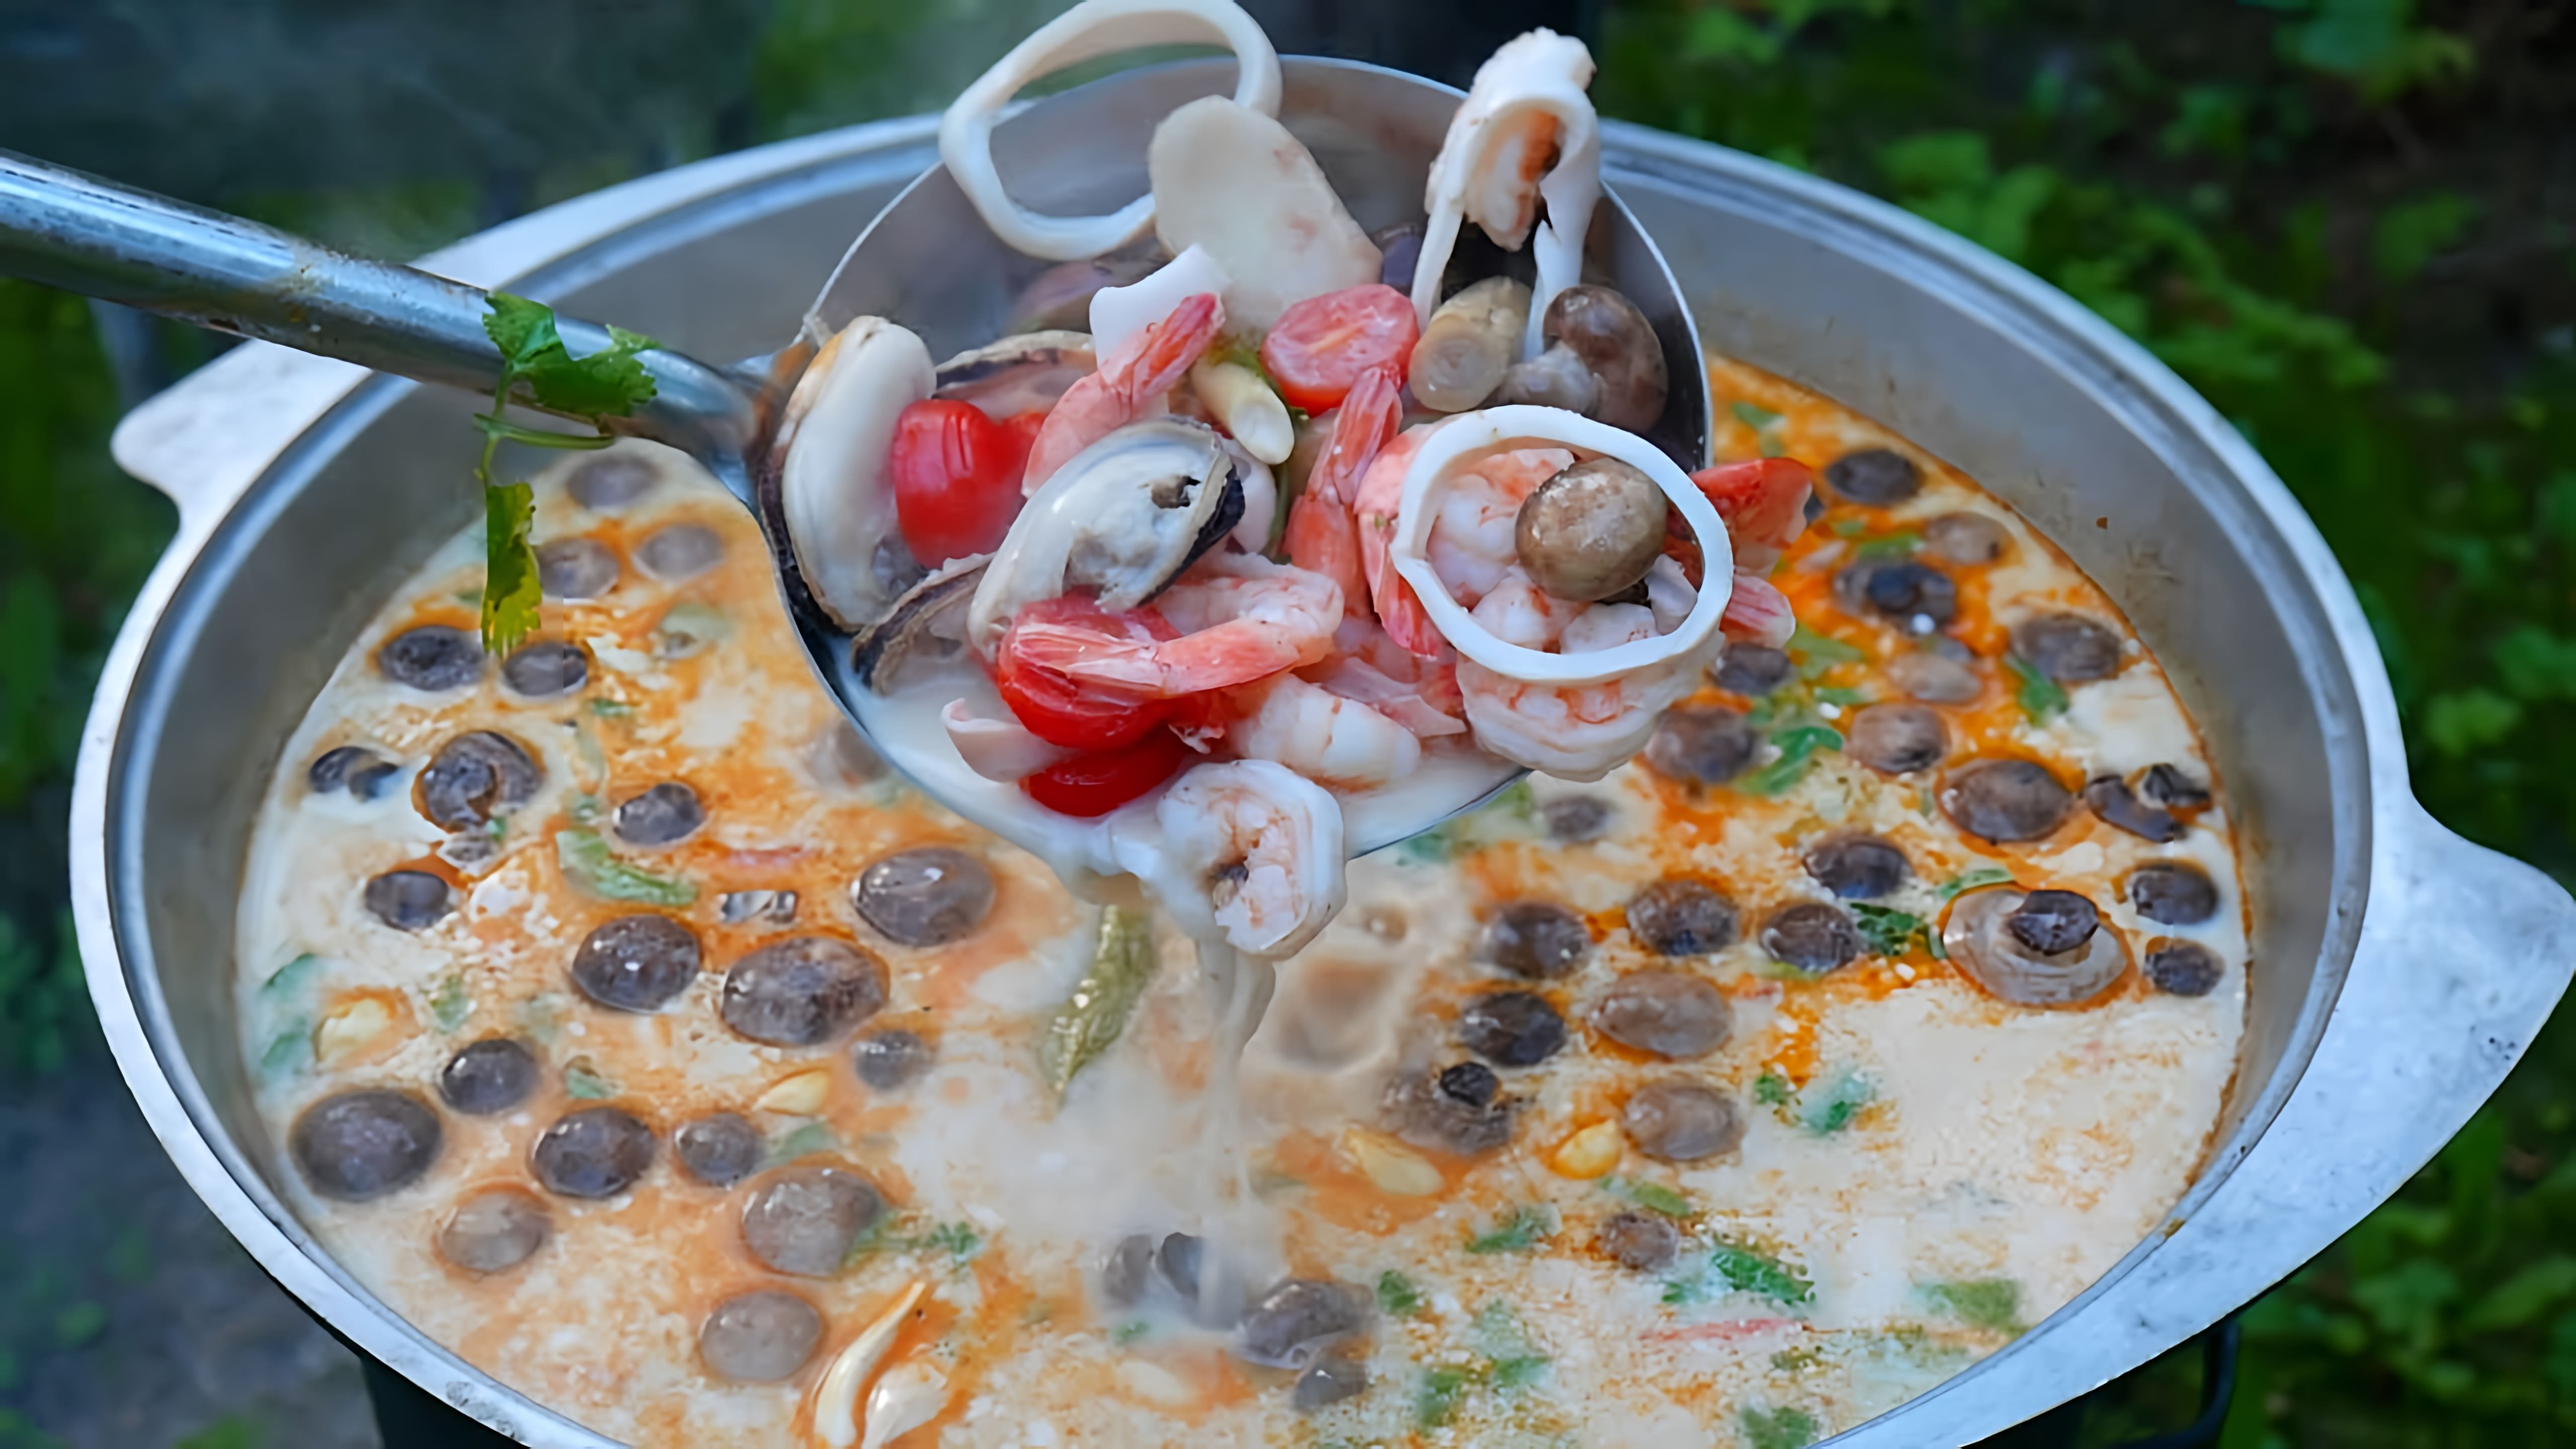 В этом видео демонстрируется рецепт приготовления супа "Том Ям" - популярного тайского блюда